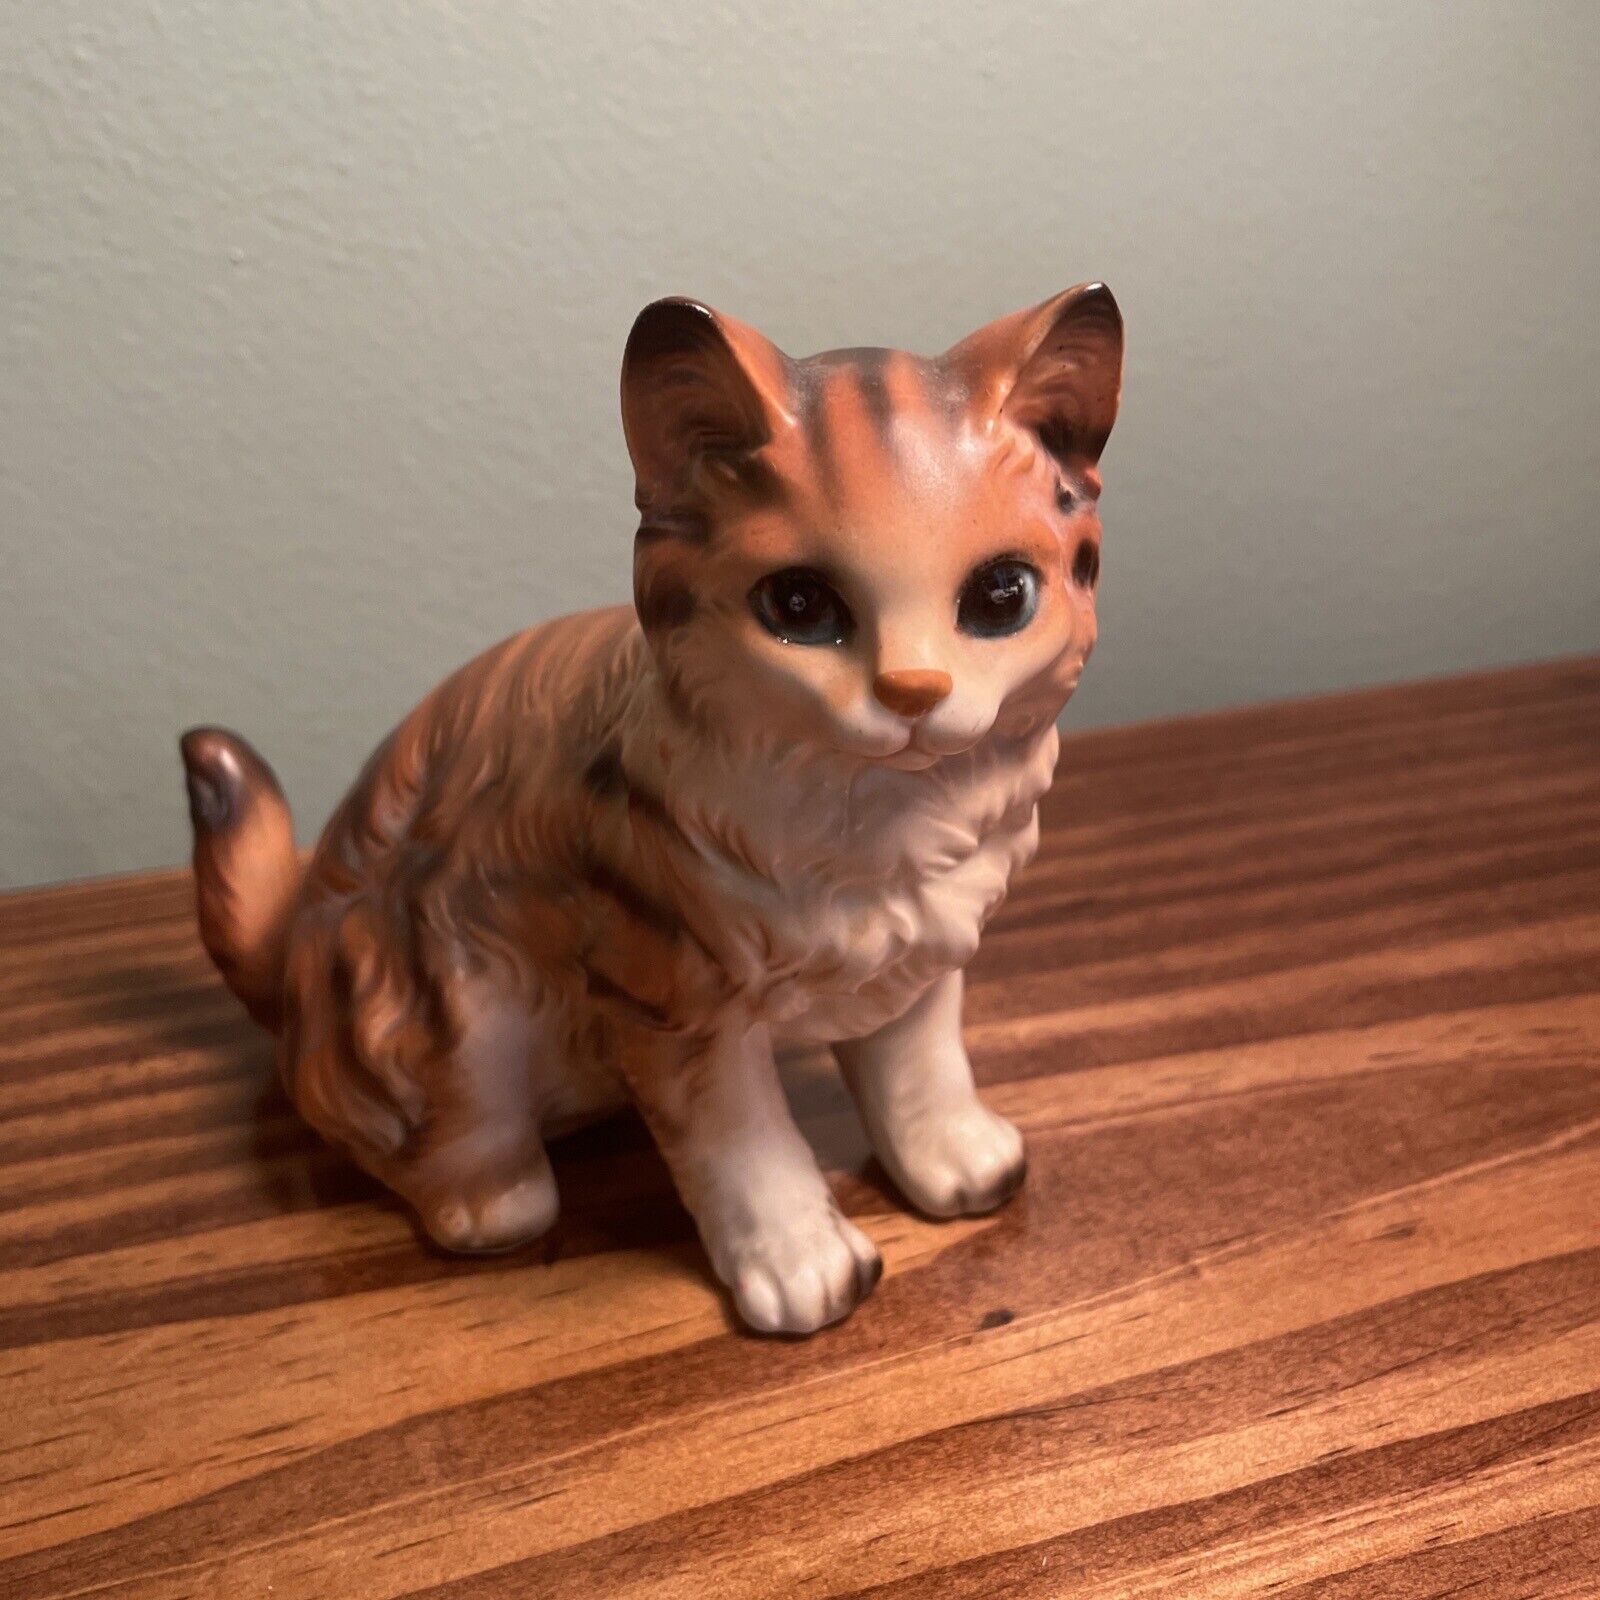 Lefton H-6364 Cat Figurine Orange Tabby 5” Vintage